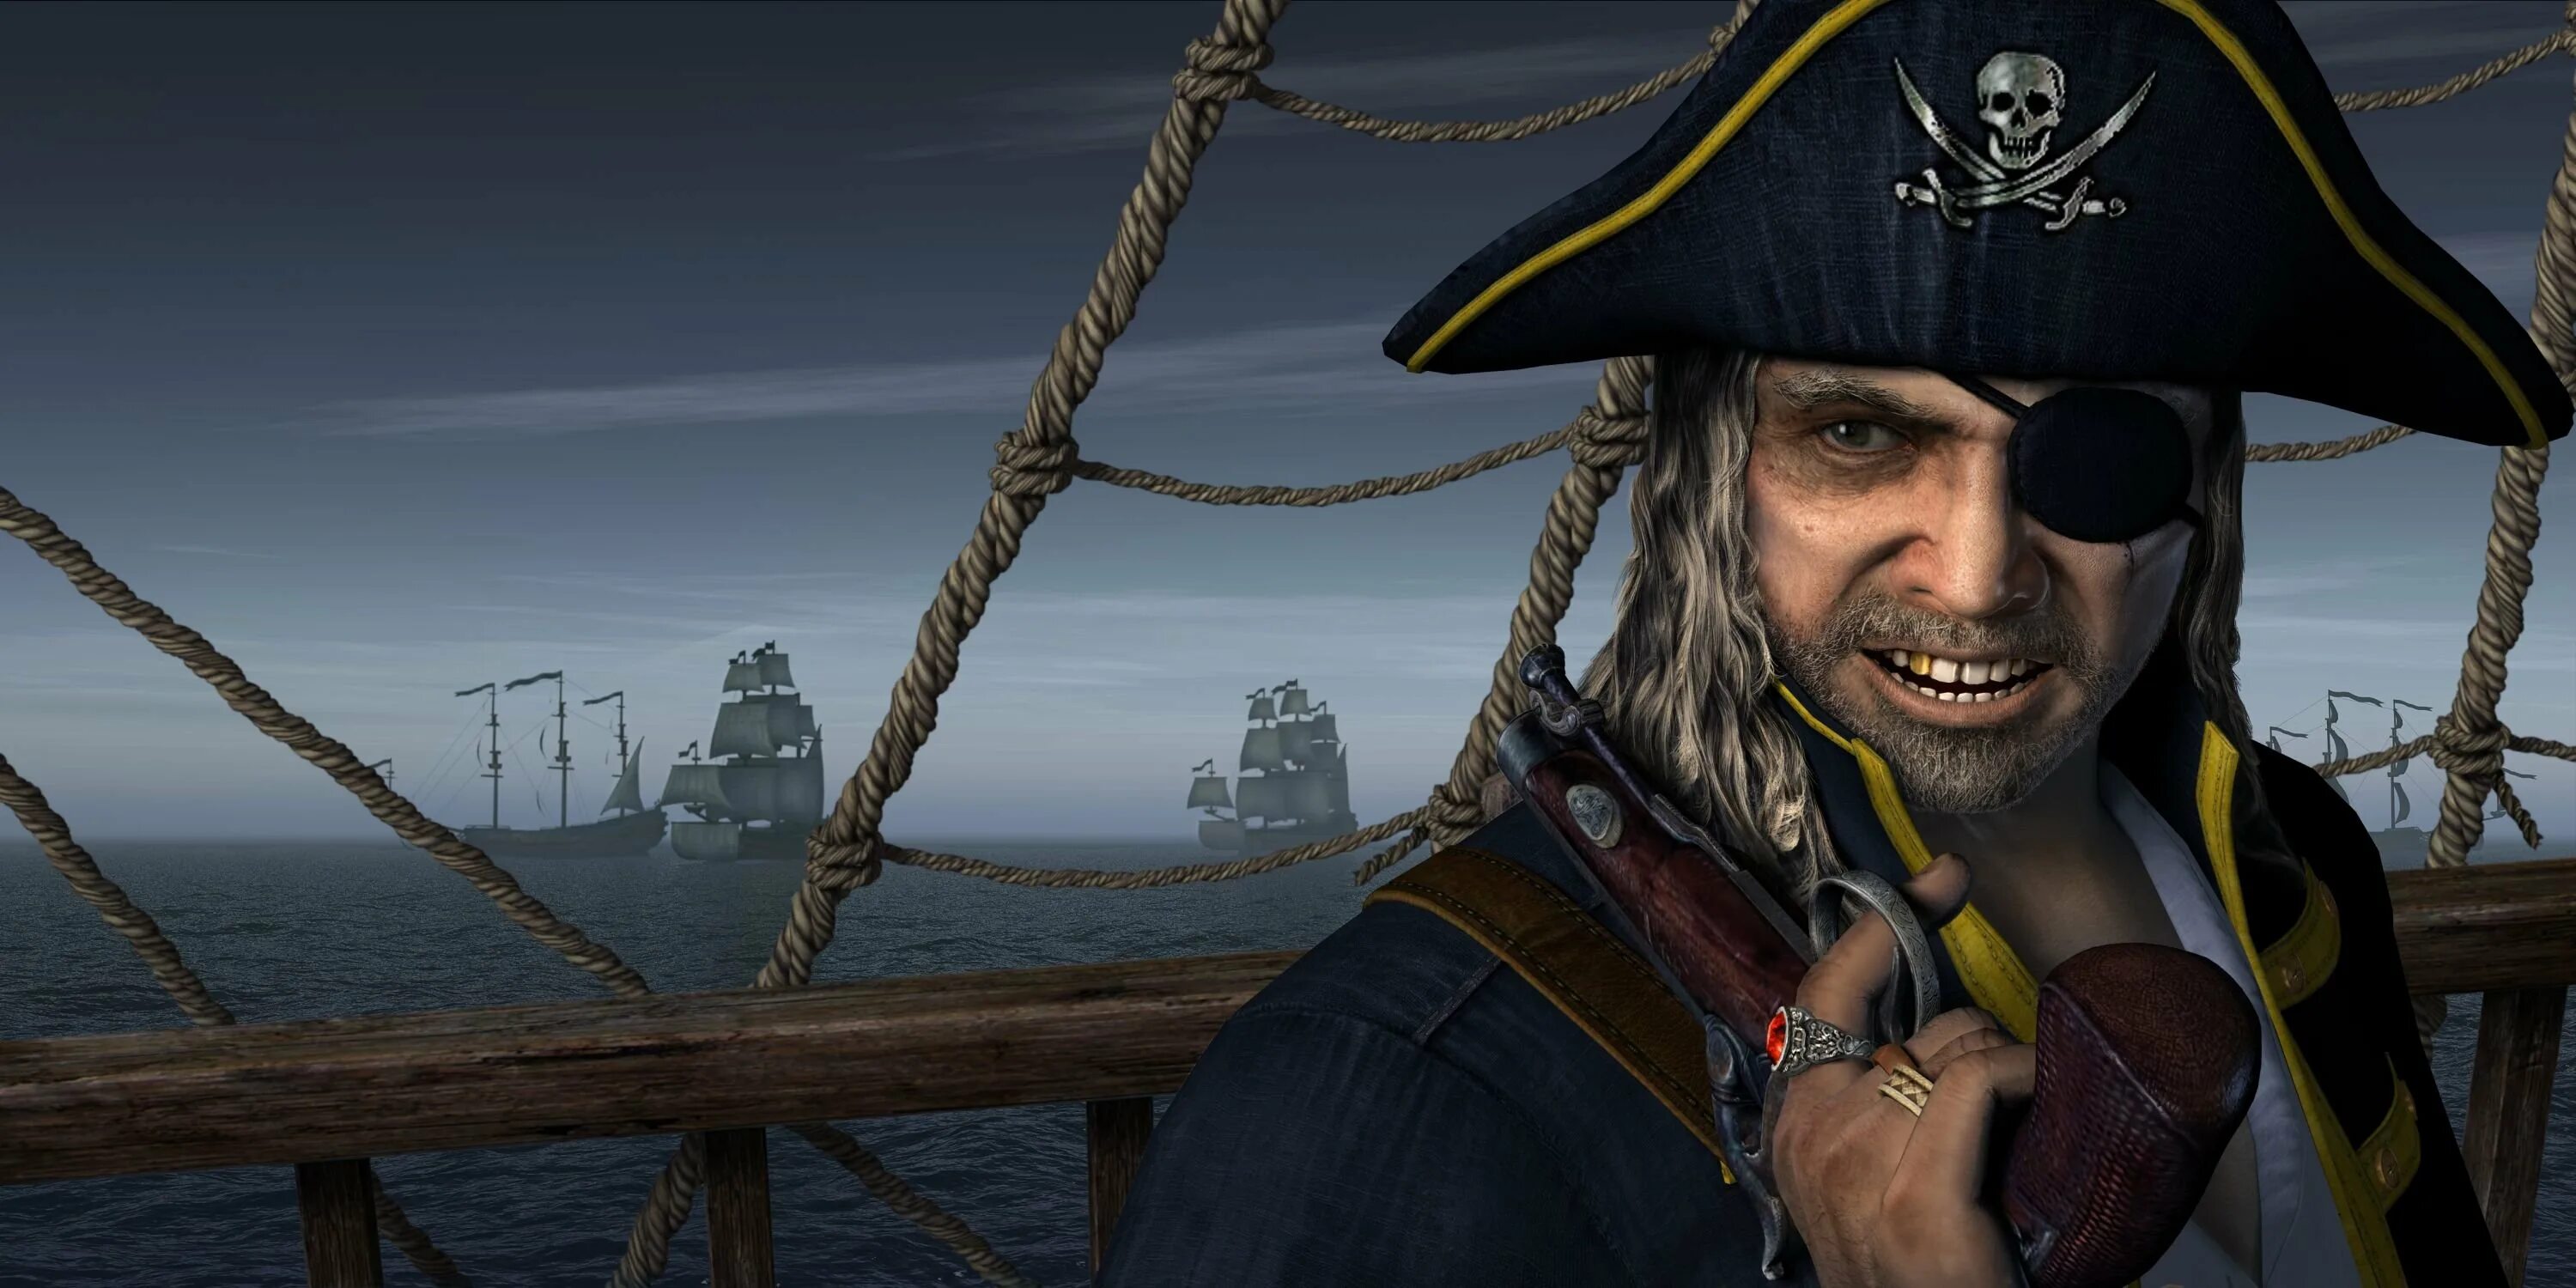 Даниэль Монбар пират. Флибустьеры пираты Корсары. Джек Воробей одноглазый пират. Включи пираты кариб